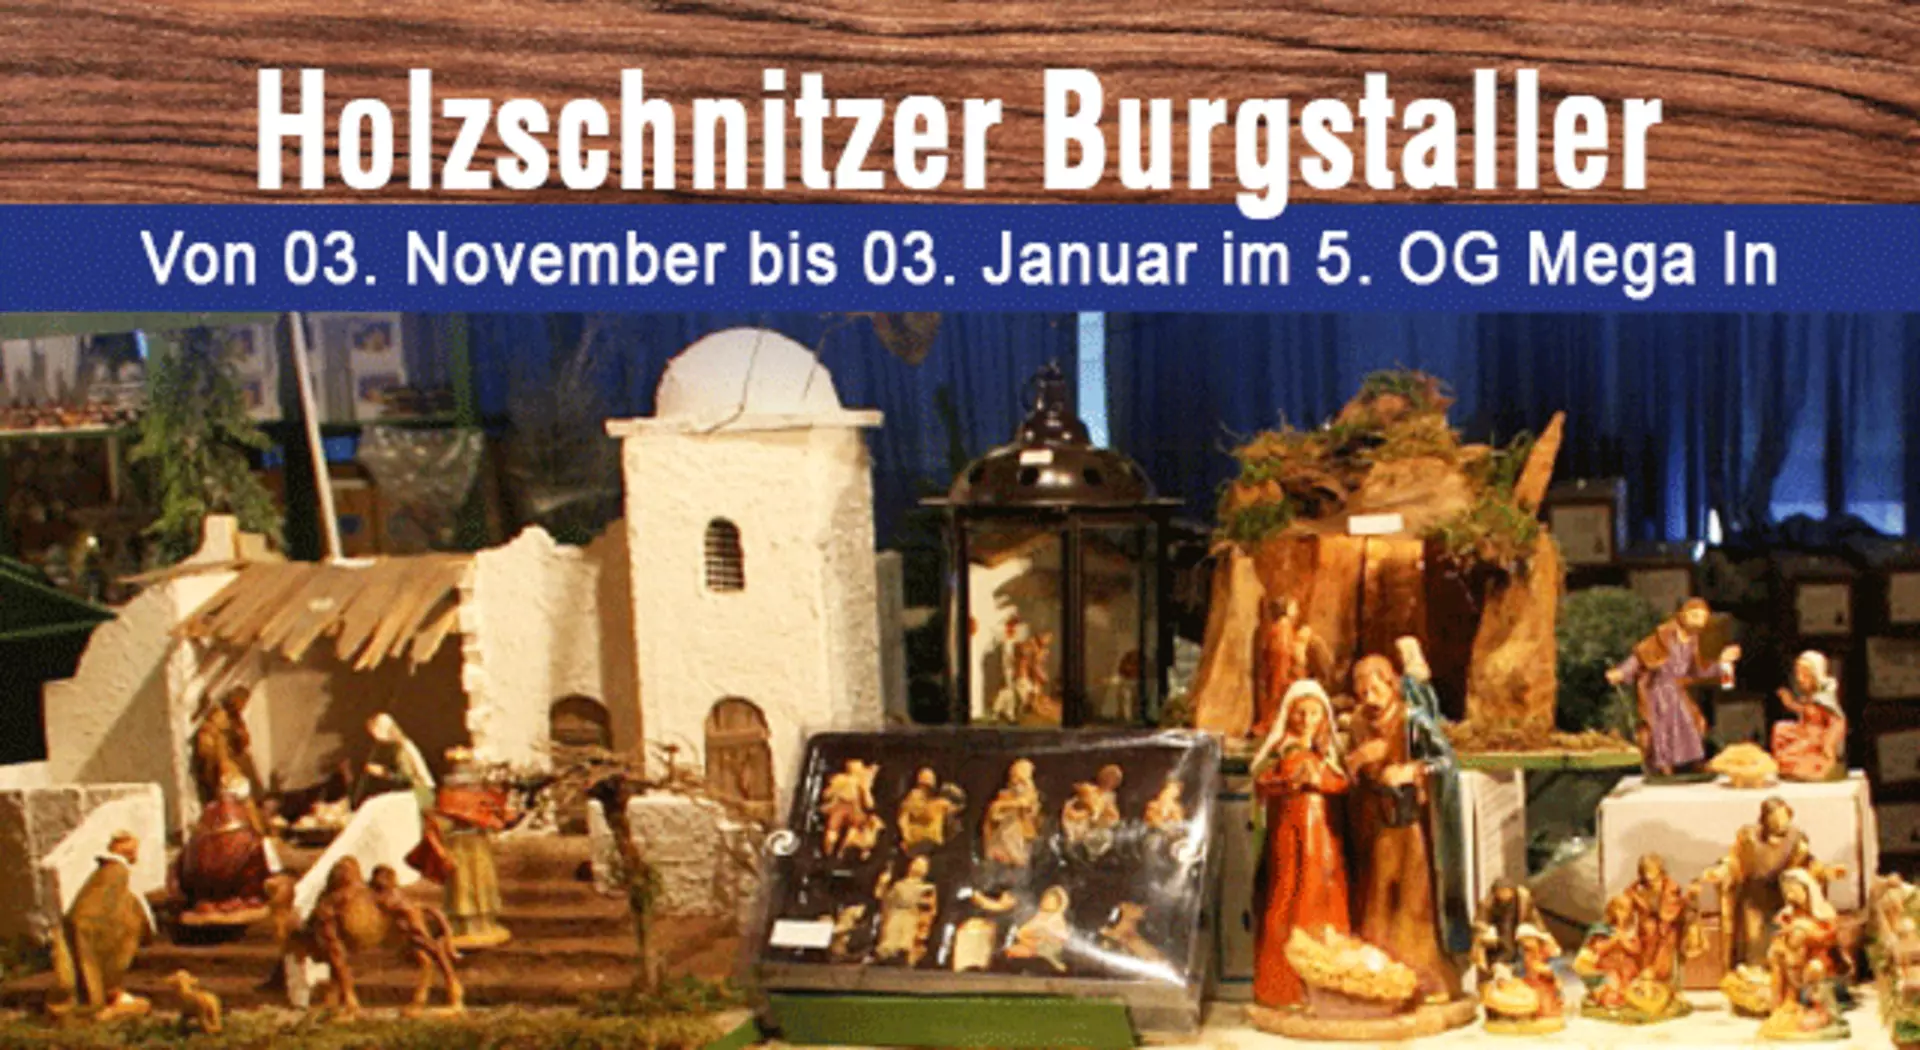 Handgefertigte Krippen und Figuren von Holzschnitzer Burgstaller bei Möbel Inhofer entdecken